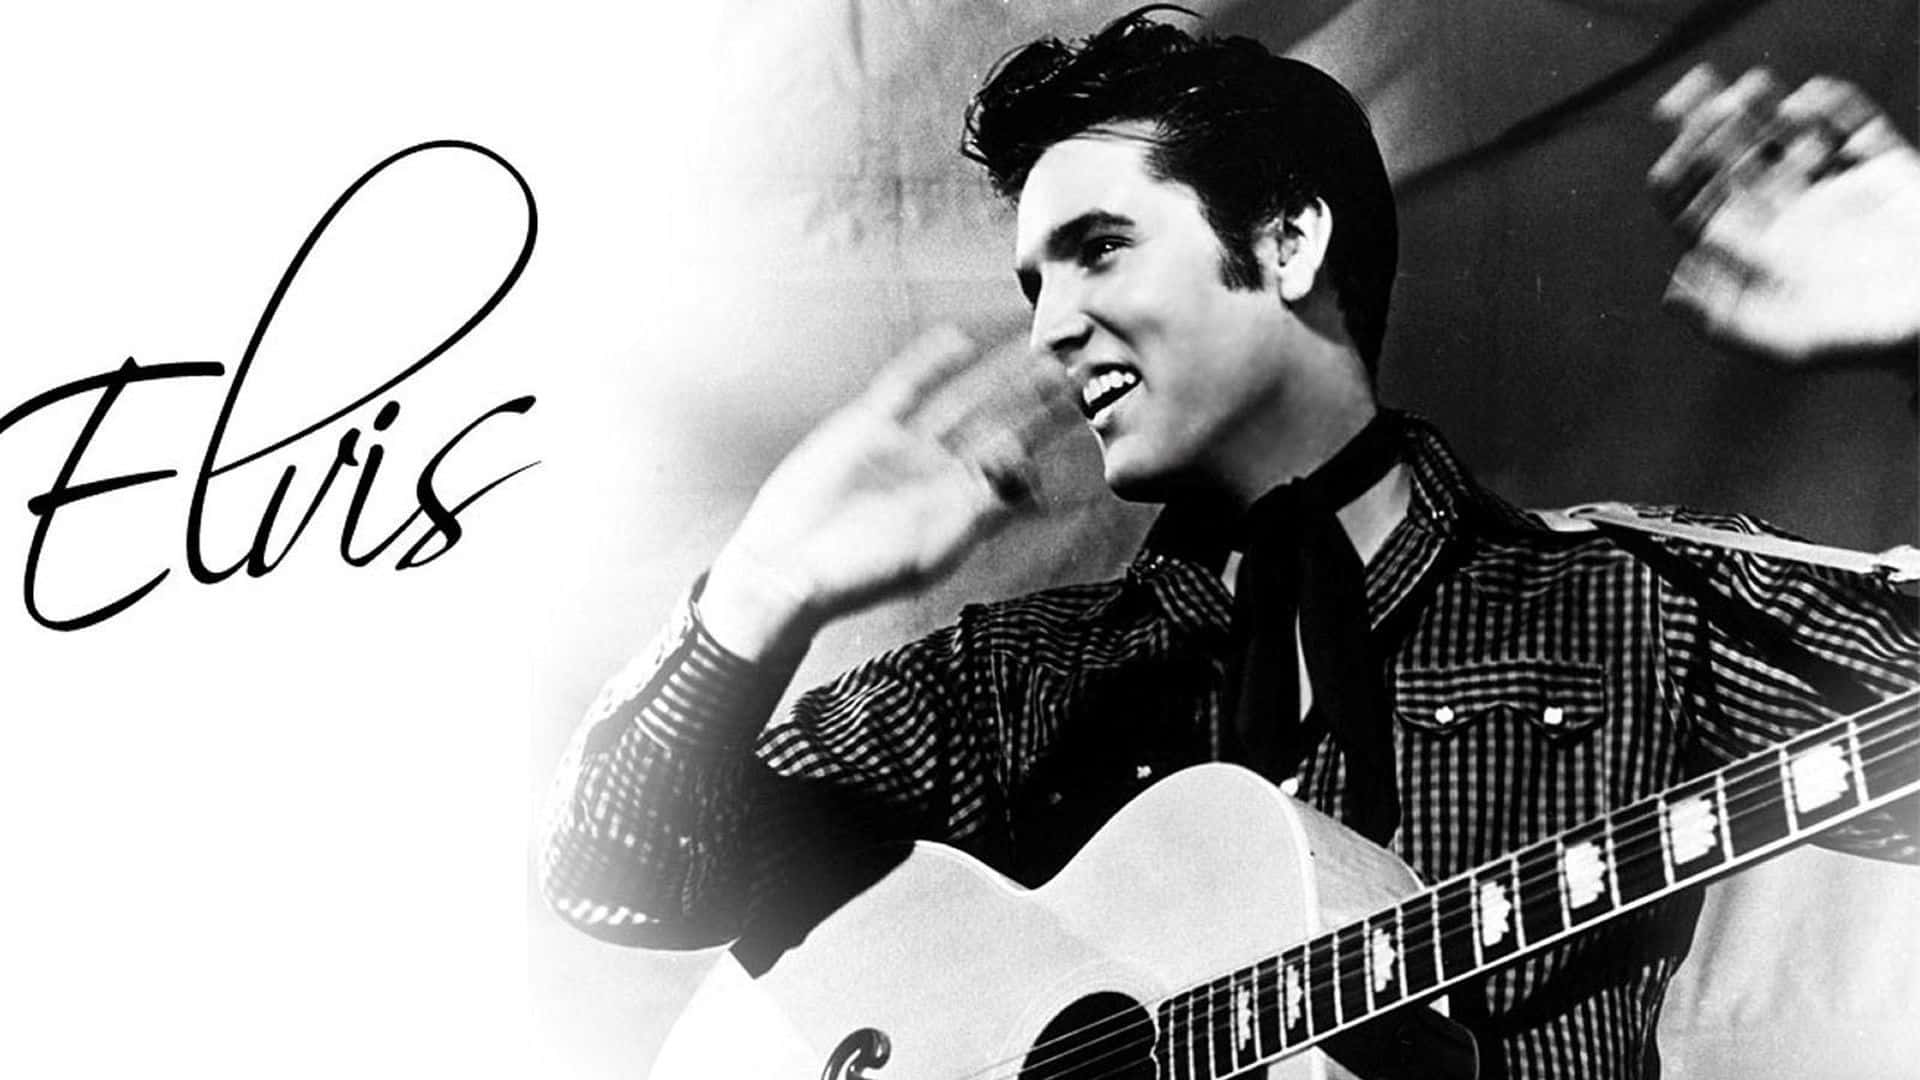 Íconoicónico, Rey Del Rock, Elvis Presley Fondo de pantalla